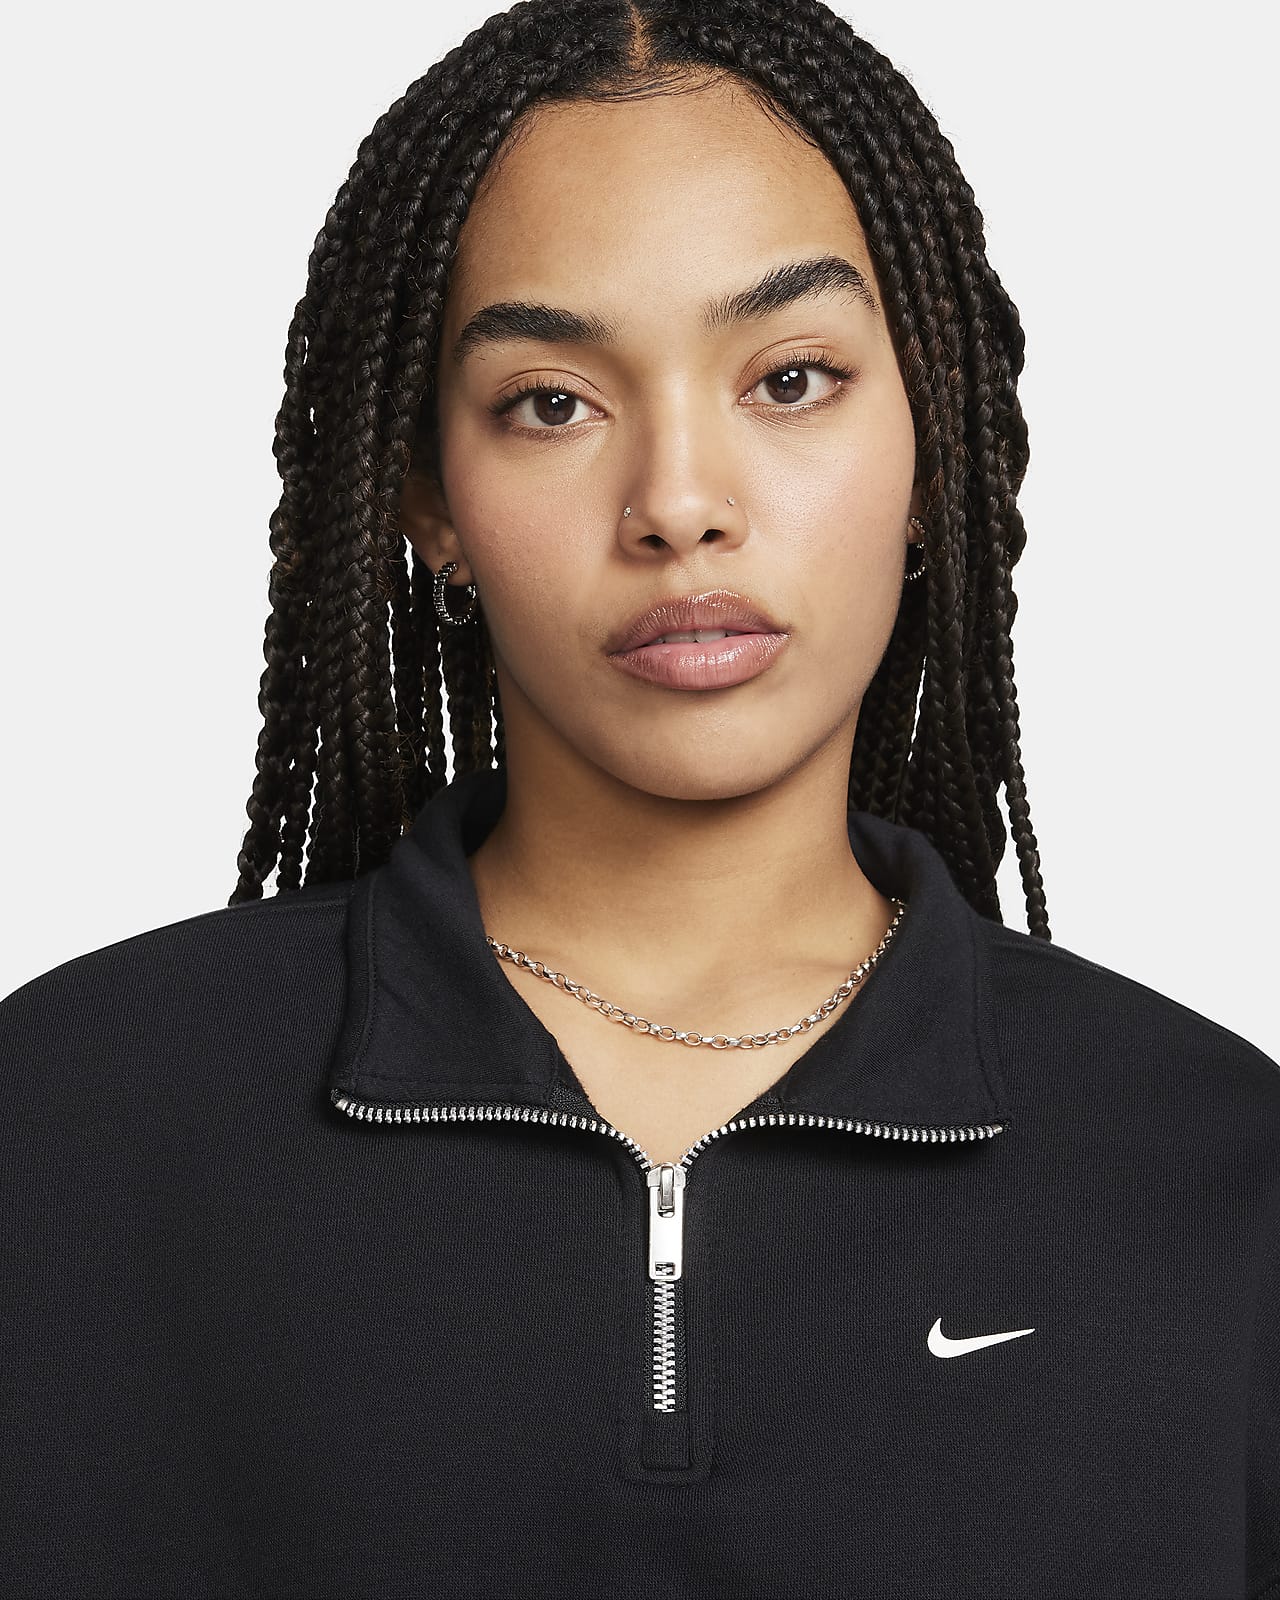 Nike Sportswear Air Women's 1/4-Zip Fleece Top